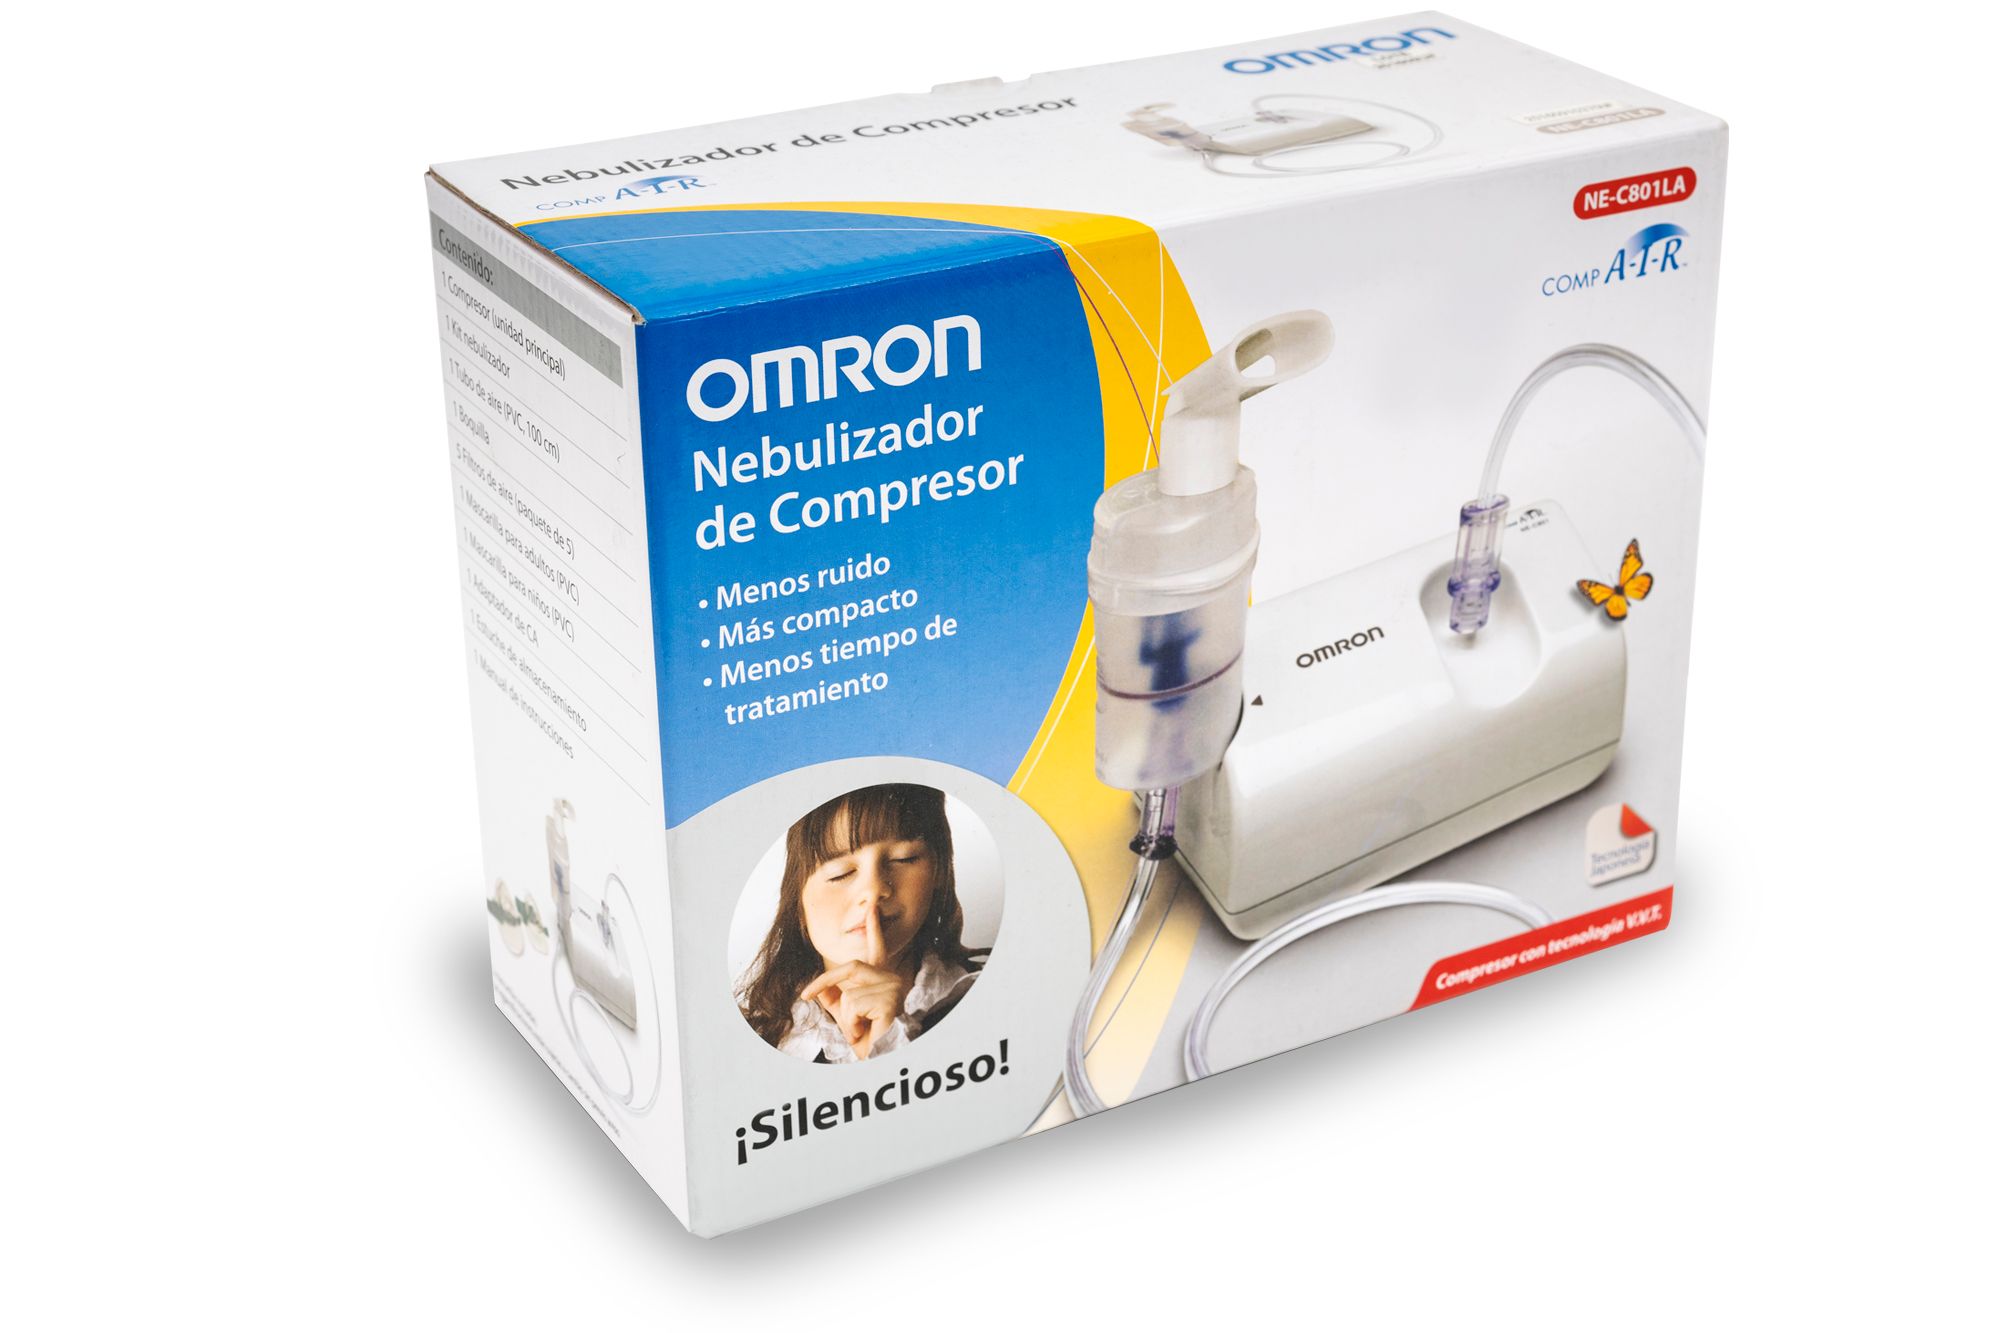 Nebulizador OMRON, fácil de utilizar 